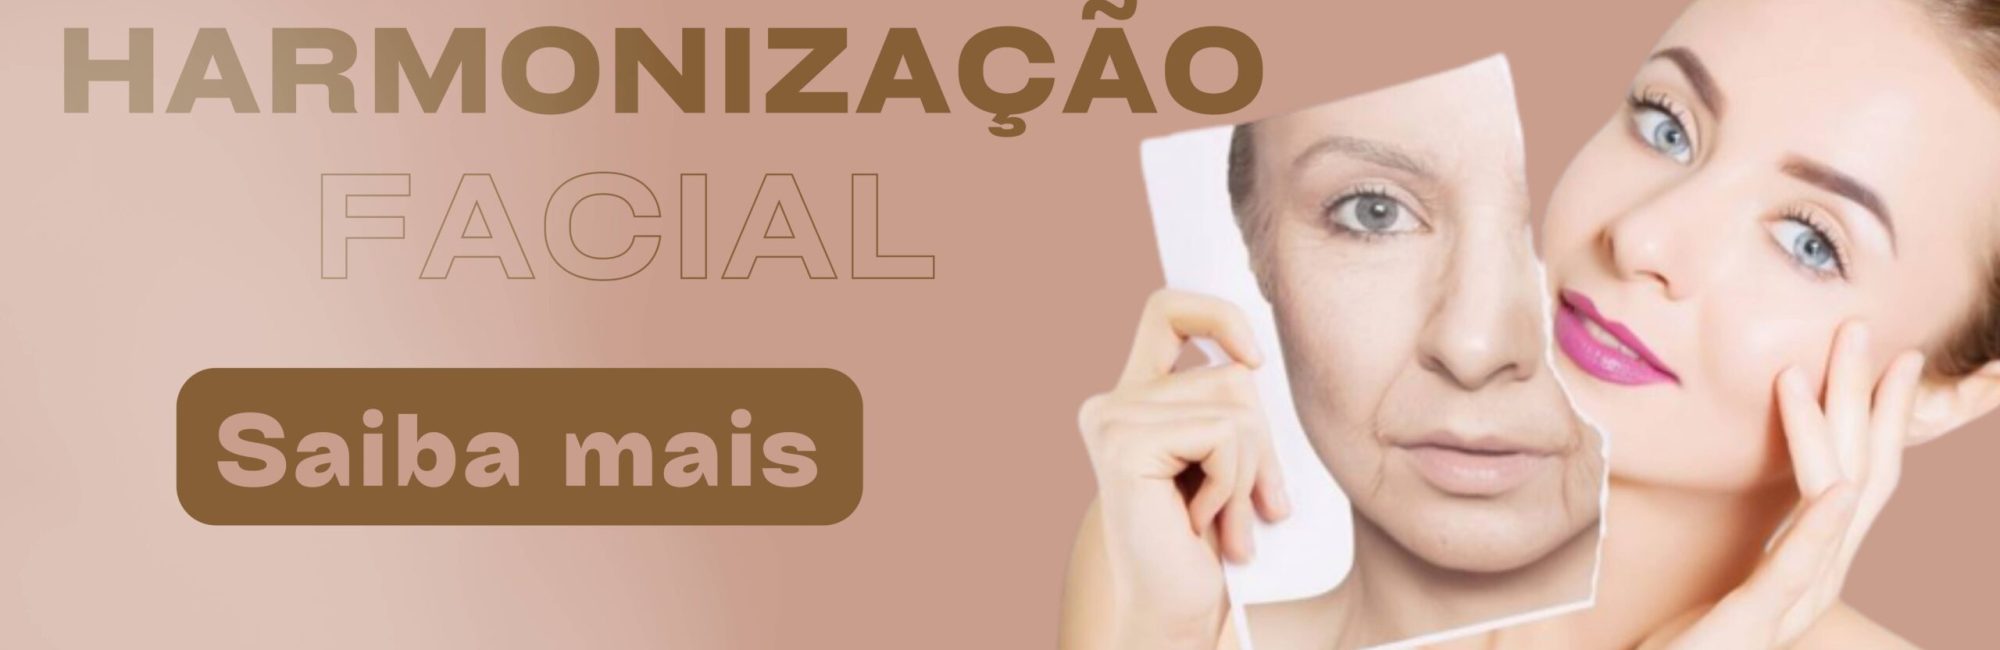 Espaço Essencial é pioneira em Harmonização Facial no Brasil. Temos serviços de Toxina Botulínica, Preenchimentos e mais. Confira!